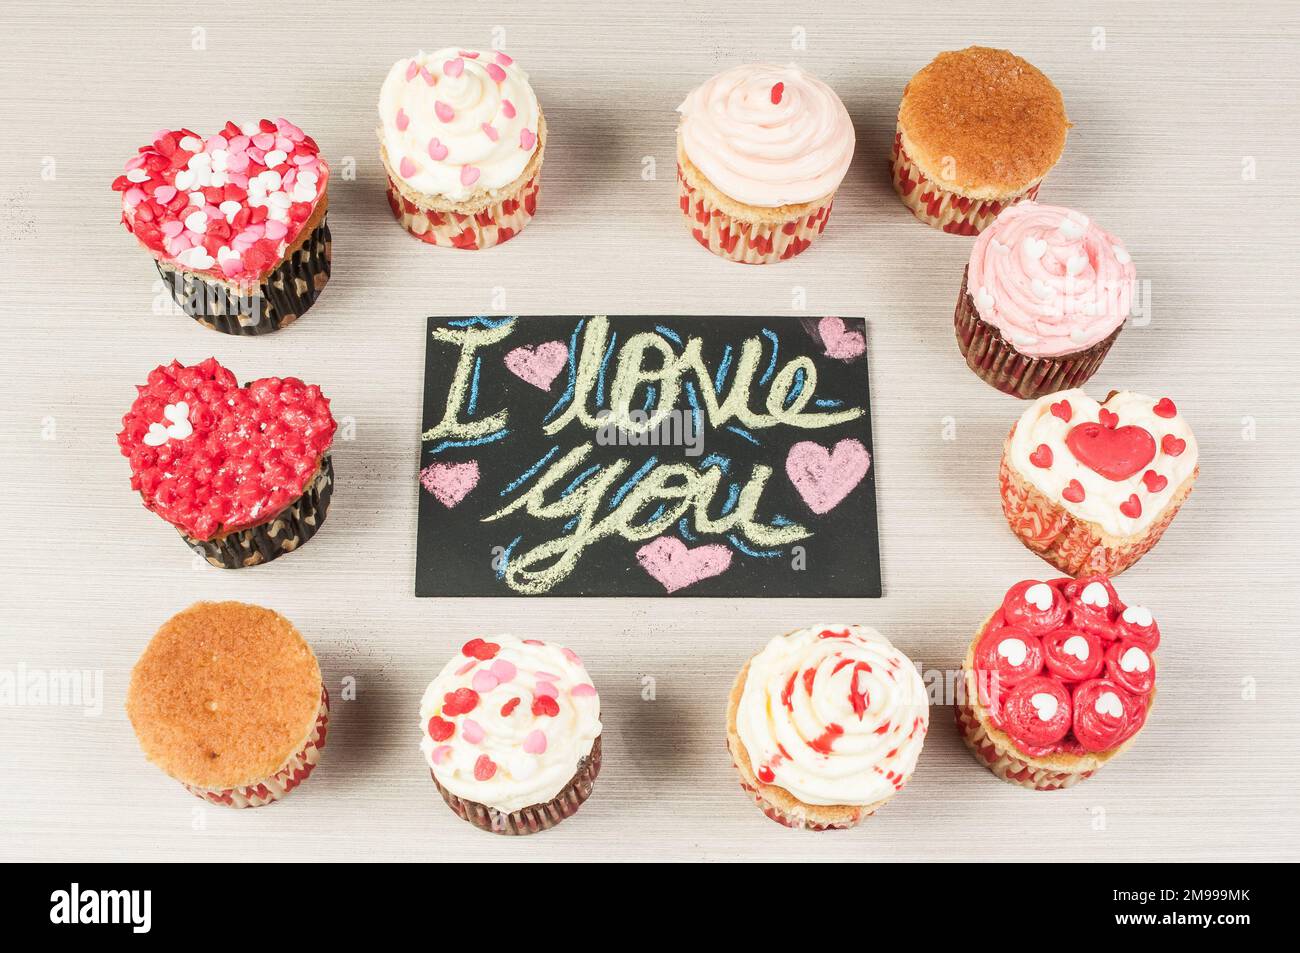 Délicieux petits gâteaux faits maison décorés pour la Saint-Valentin. Banque D'Images